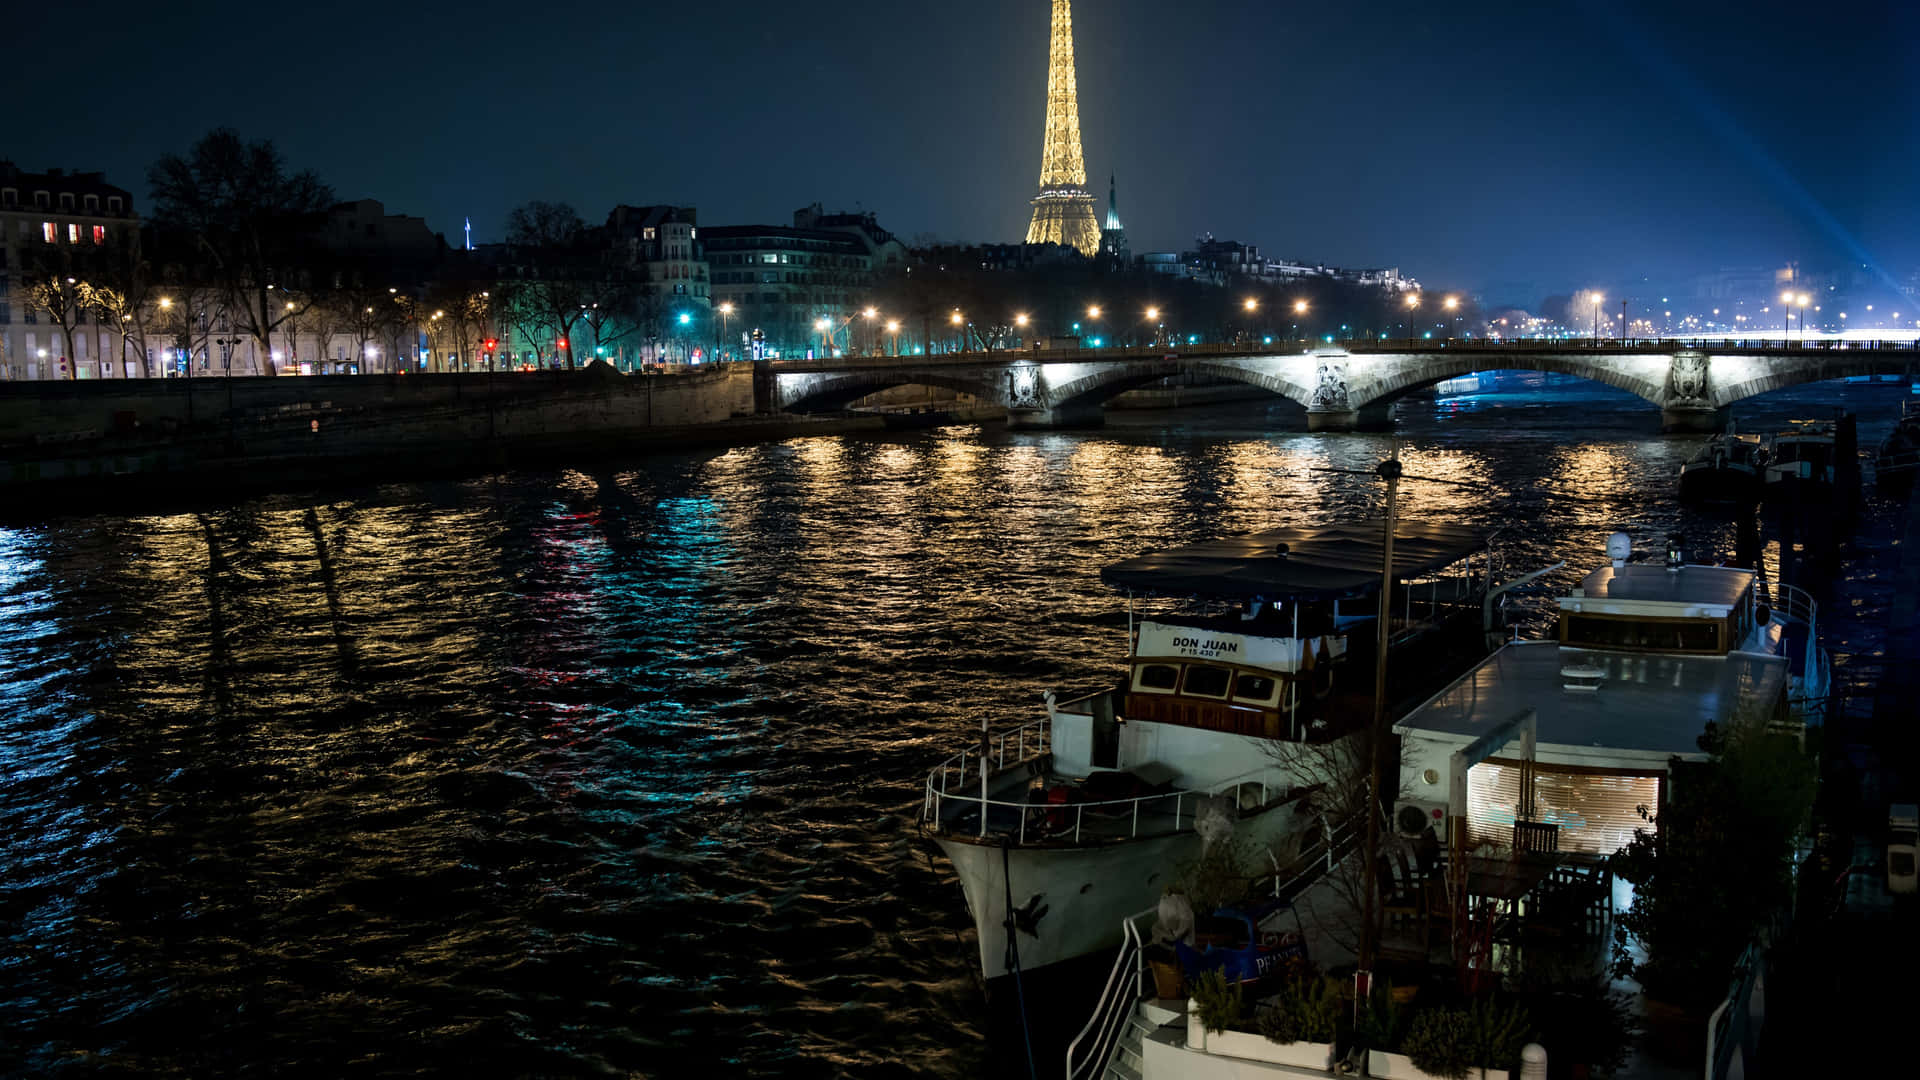 Tag på udsigten til den oplyste Eiffeltårn i Paris om natten. Wallpaper